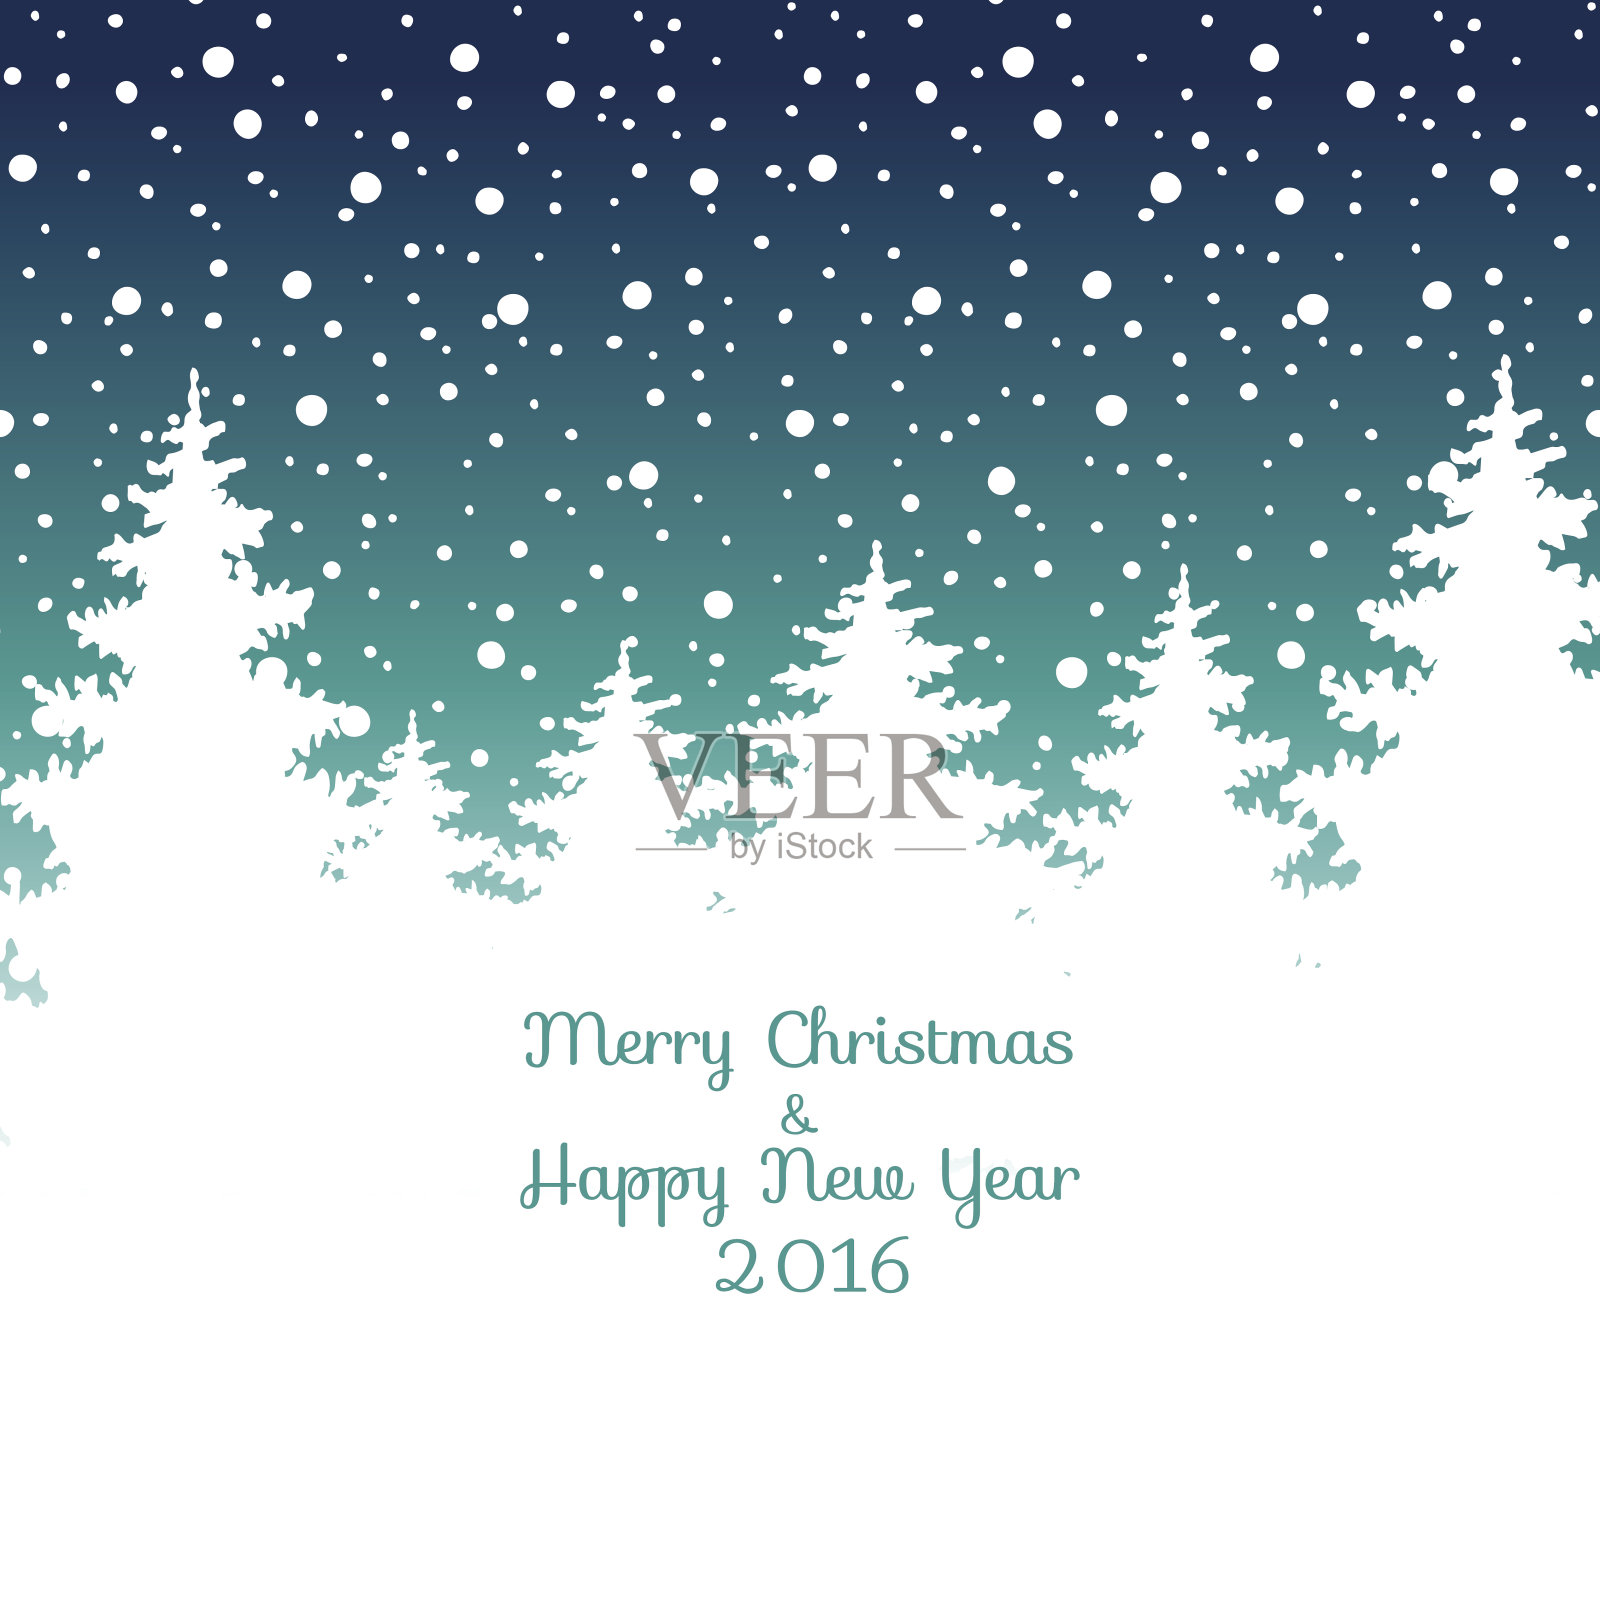 圣诞快乐，新年快乐2016圣诞贺卡。矢量冬季假日景观背景有树木、雪花、落雪。设计模板素材